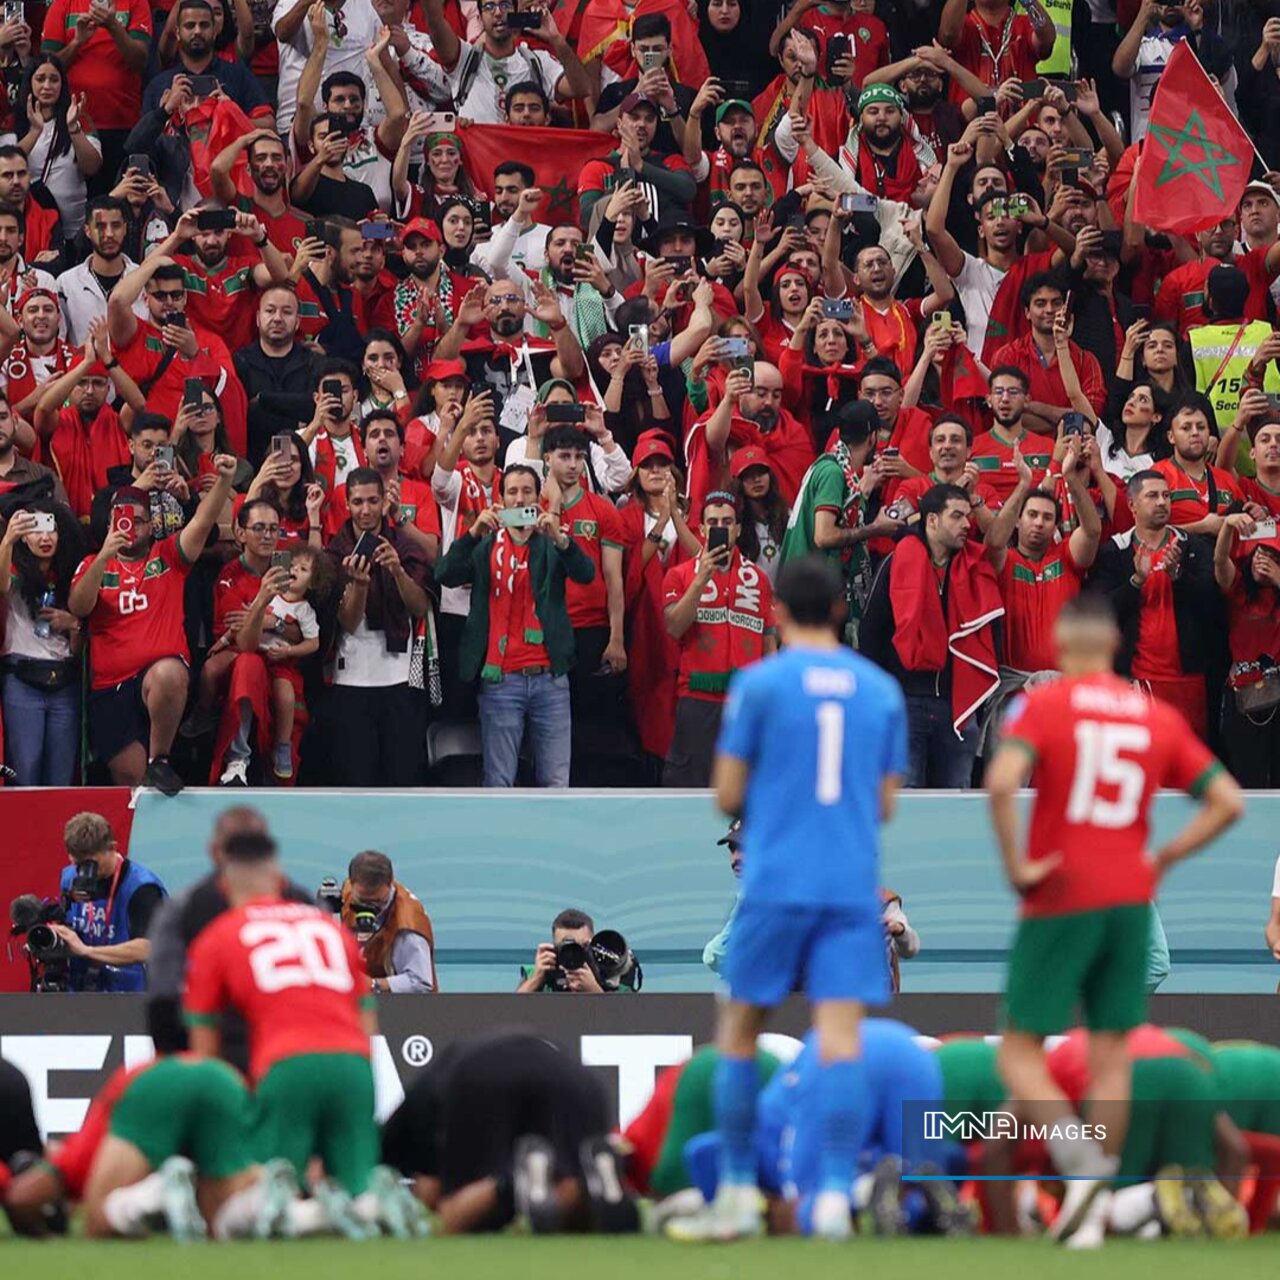 مراکش به فینال نرسید اما برای هواداران، قهرمان شد!+عکس